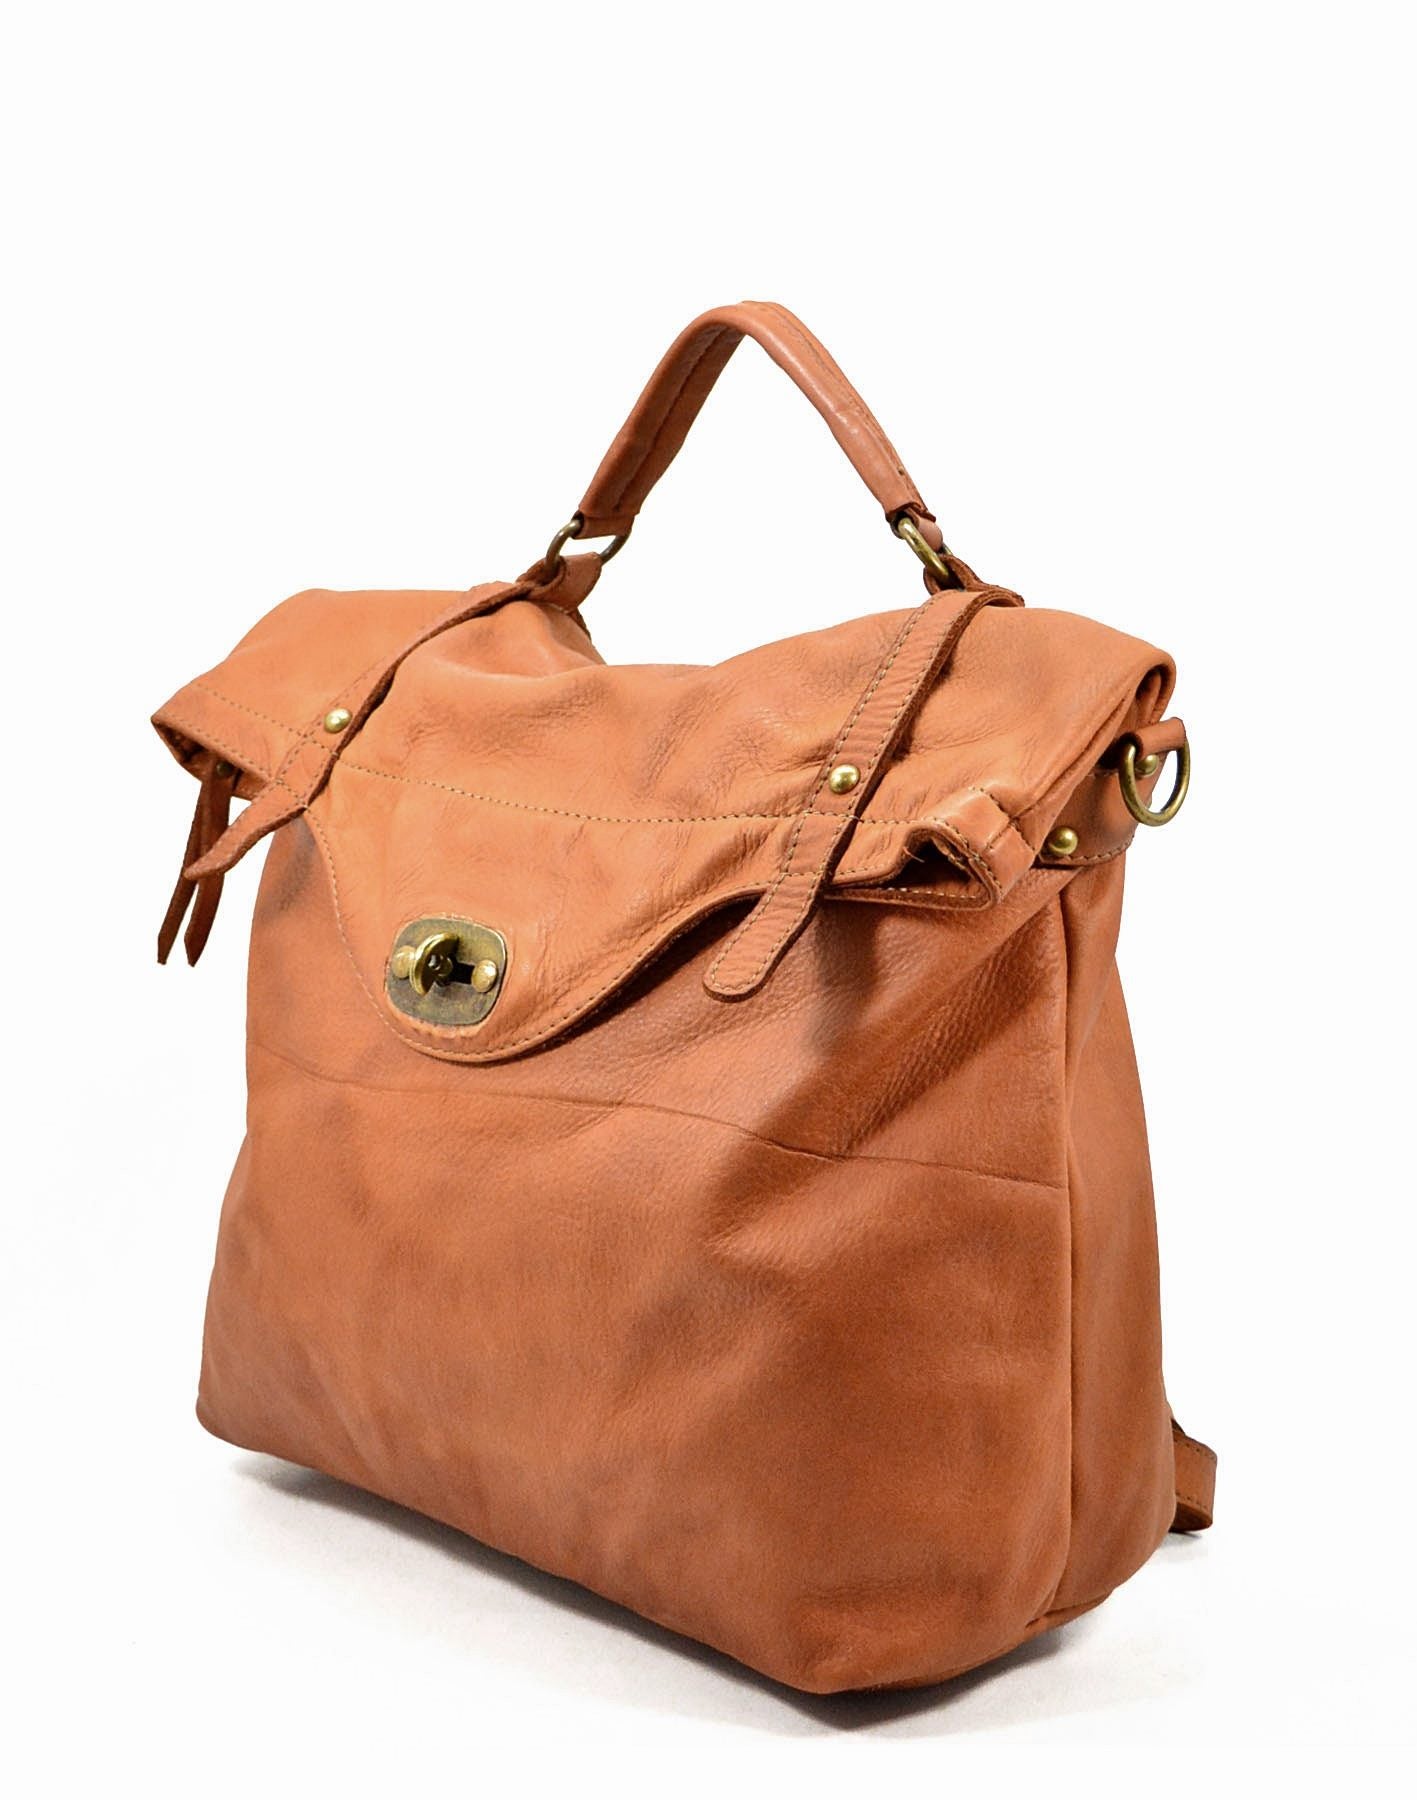 MATTINO● Gran mochila vintage 3 en 1 bolso de cuero para las mujeres y los hombres. hecho a mano en Italia